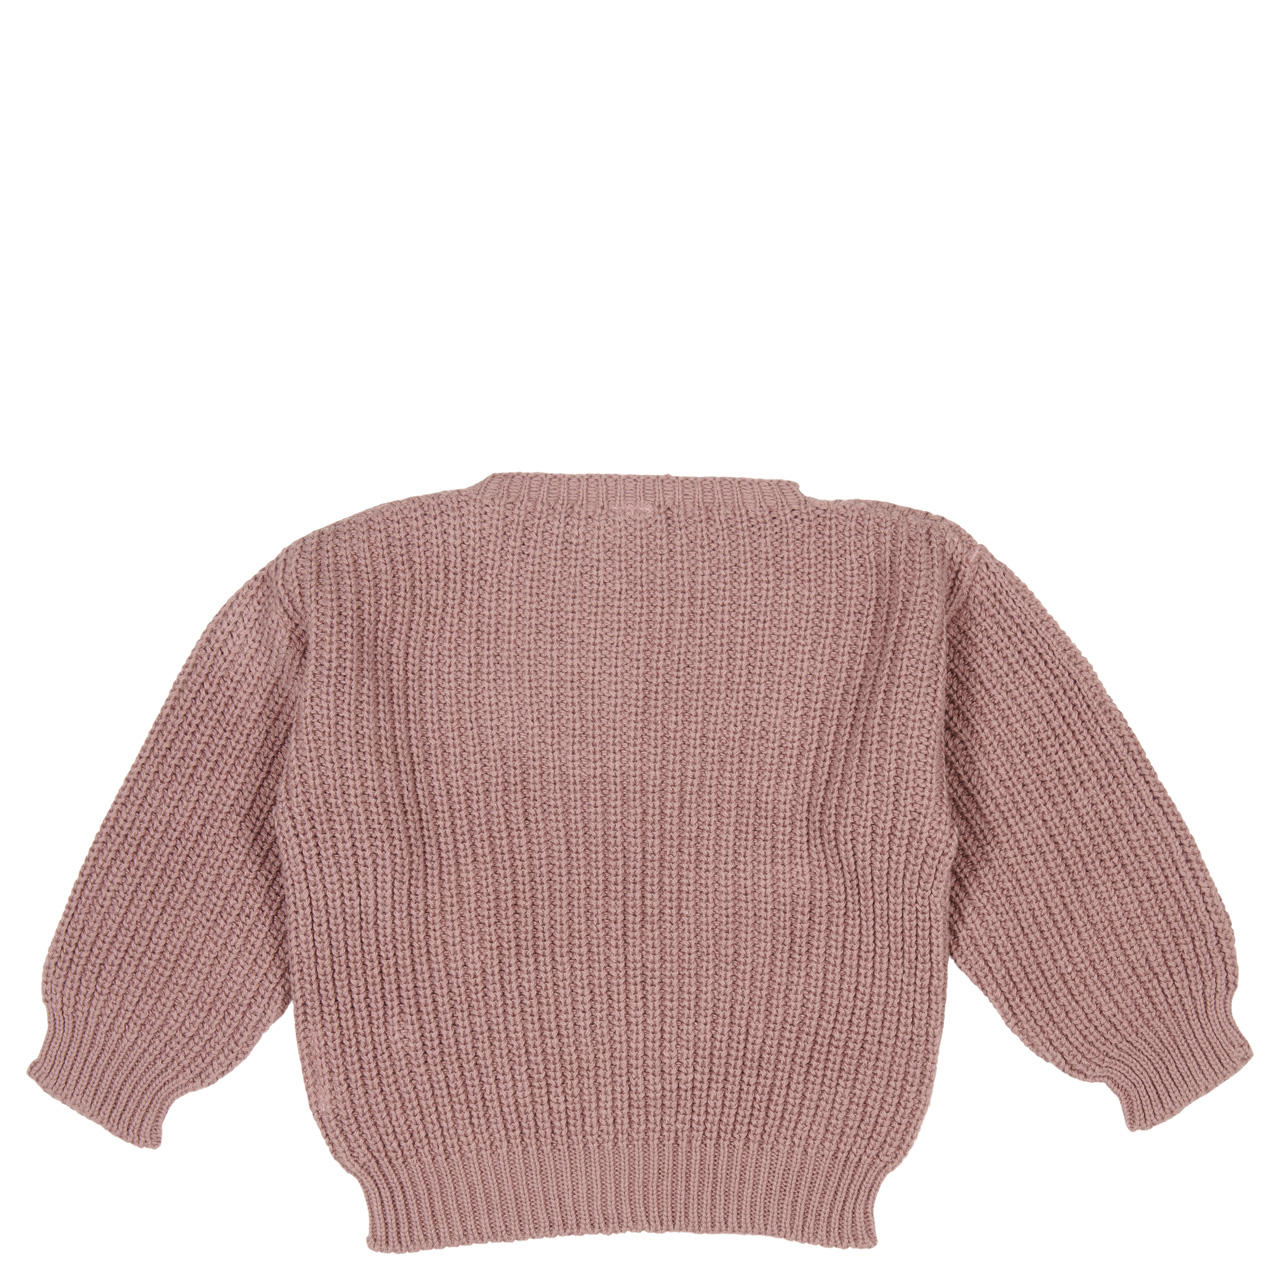 Baby sweater Dinan mauve